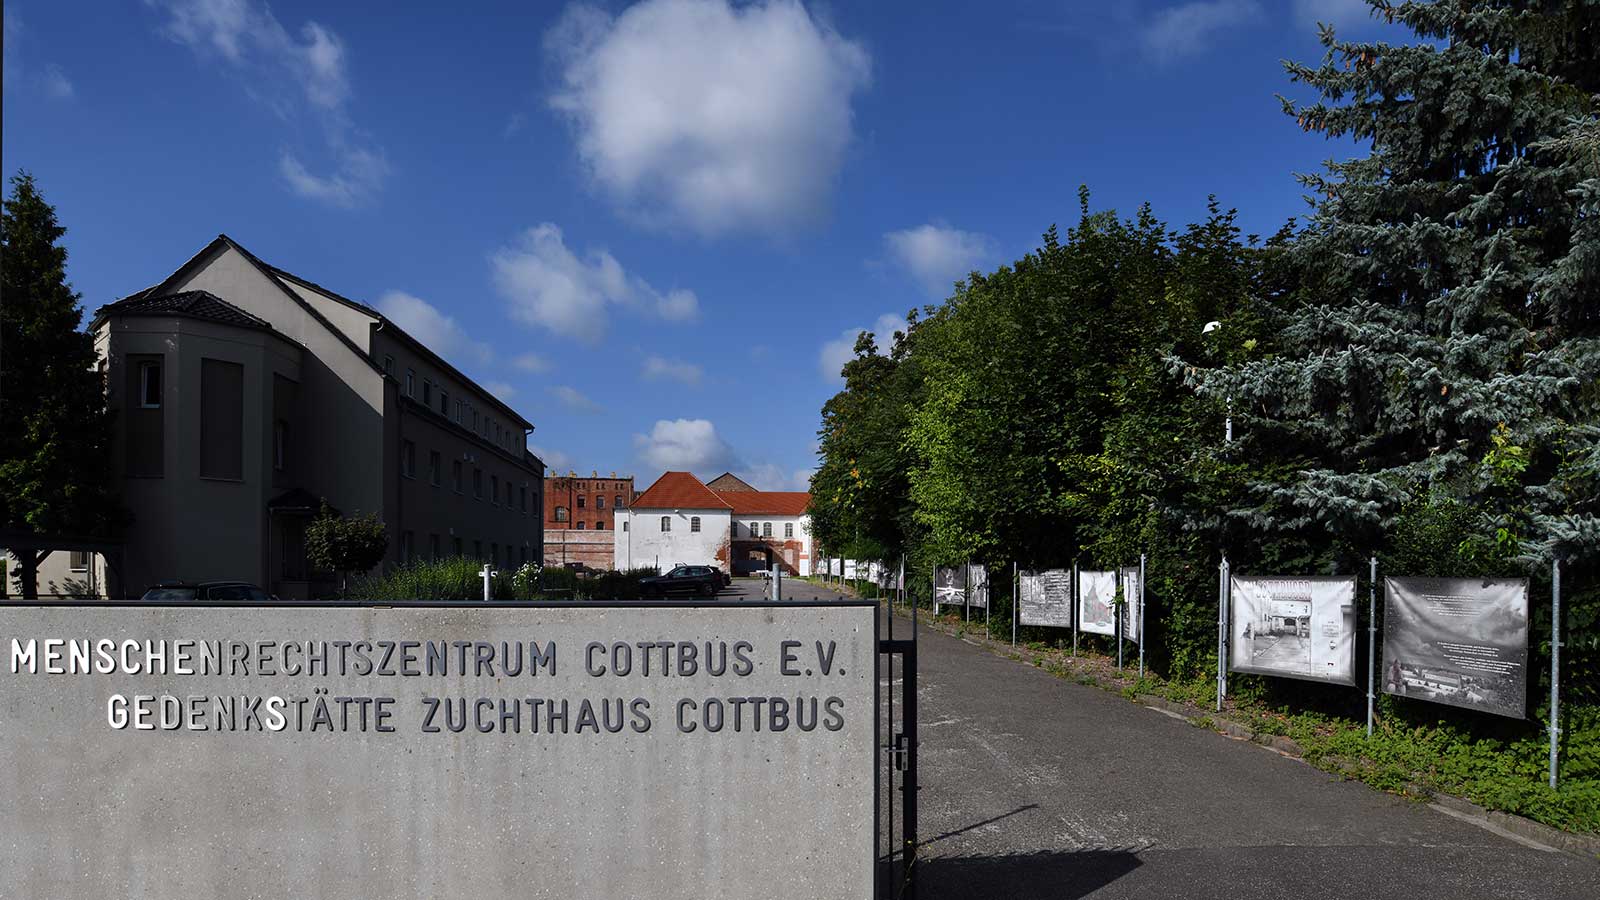 Impressum – Menschenrechtszentrumm Cottbus